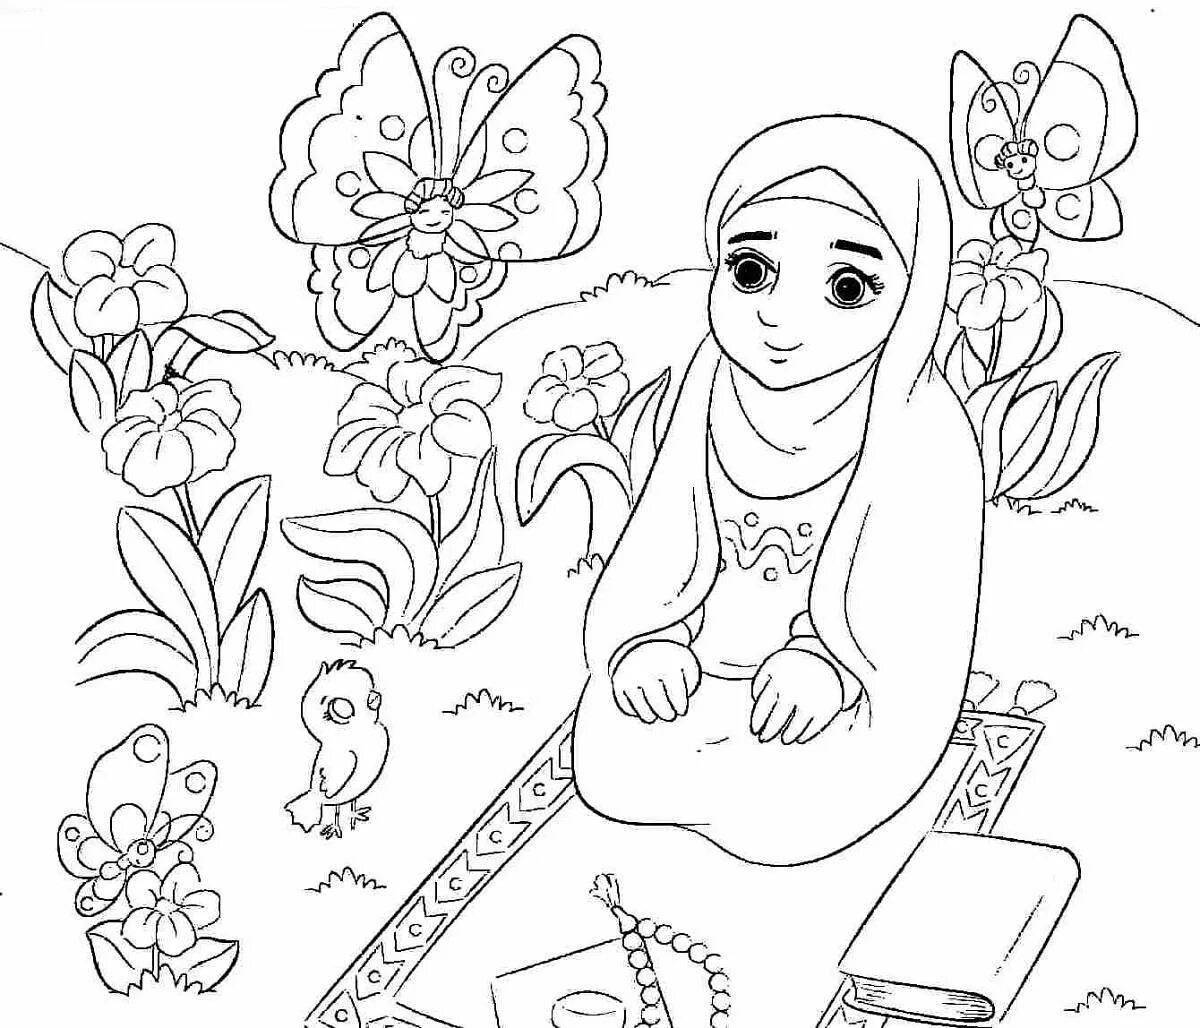 Fun coloring book for Muslim girls